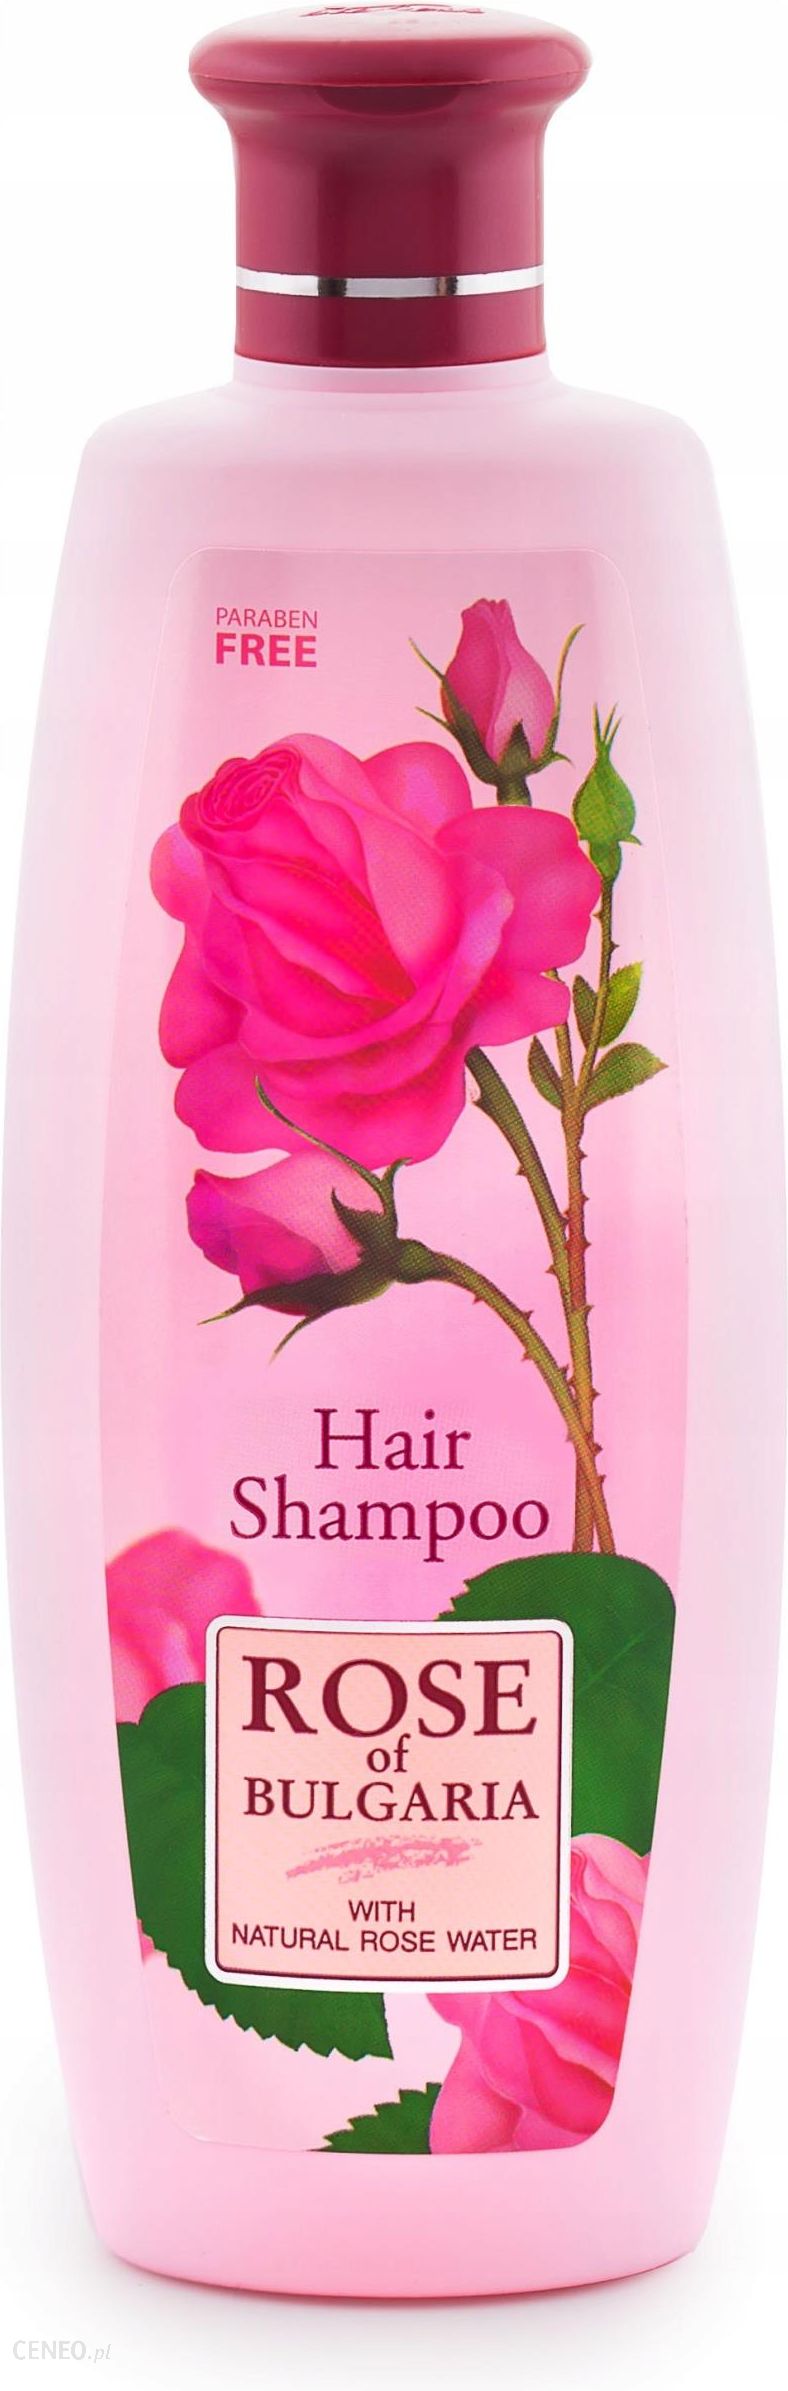 szampon różany delikatny ceneo